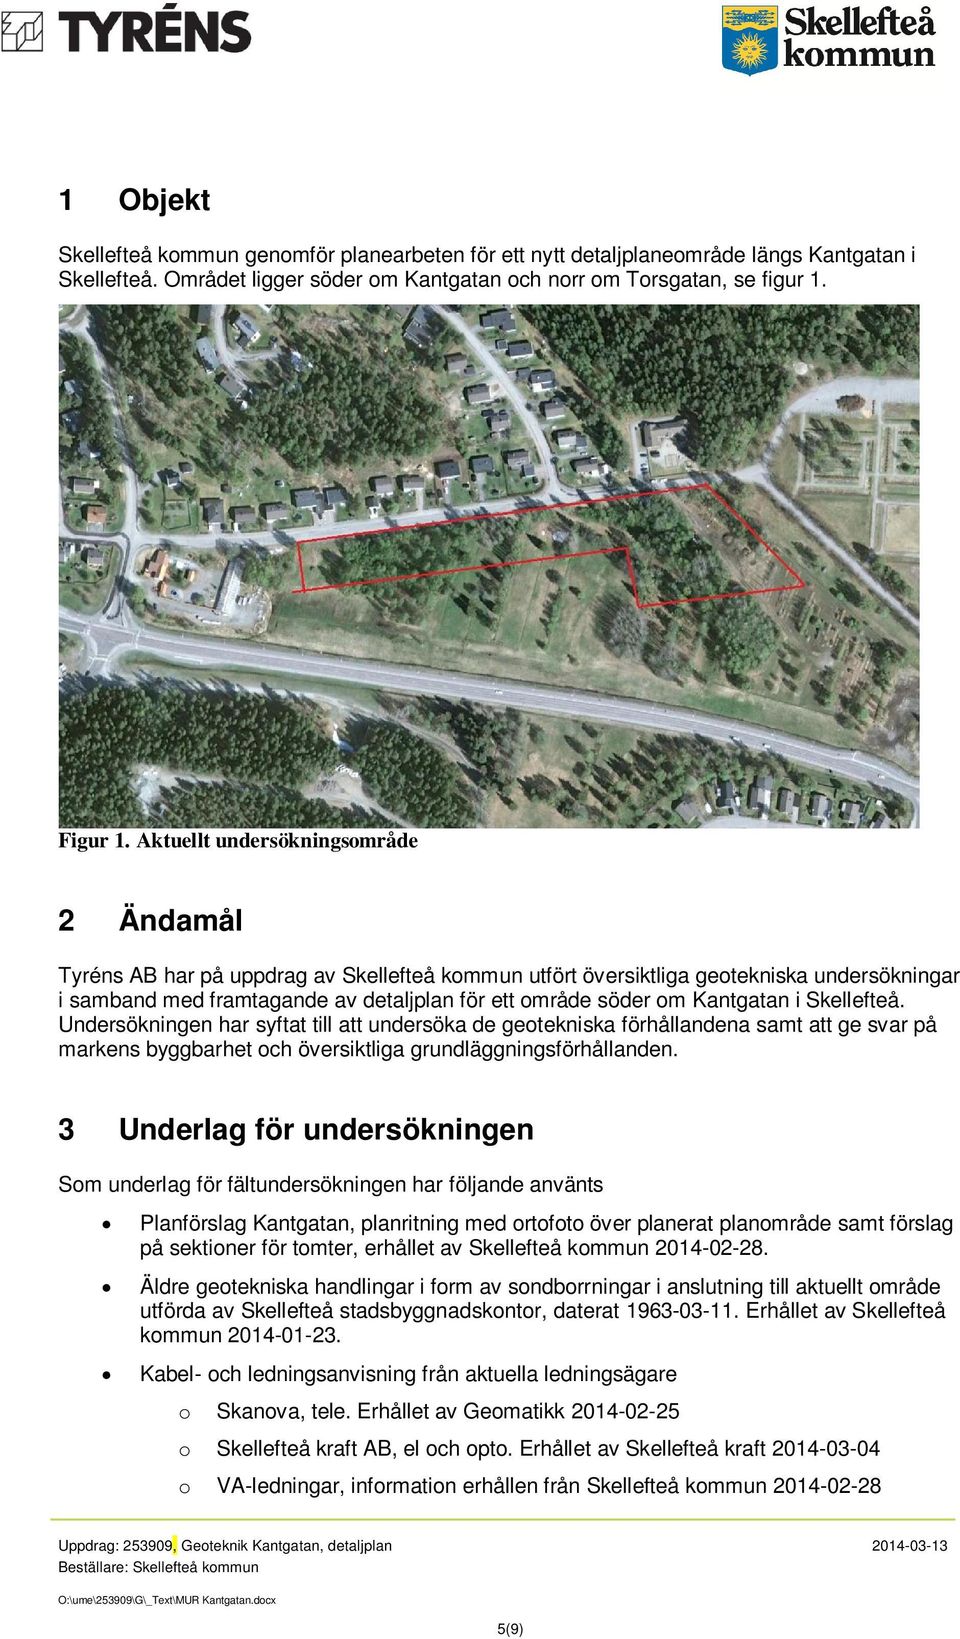 Kantgatan i Skellefteå. Undersökningen har syftat till att undersöka de geotekniska förhållandena samt att ge svar på markens byggbarhet och översiktliga grundläggningsförhållanden.